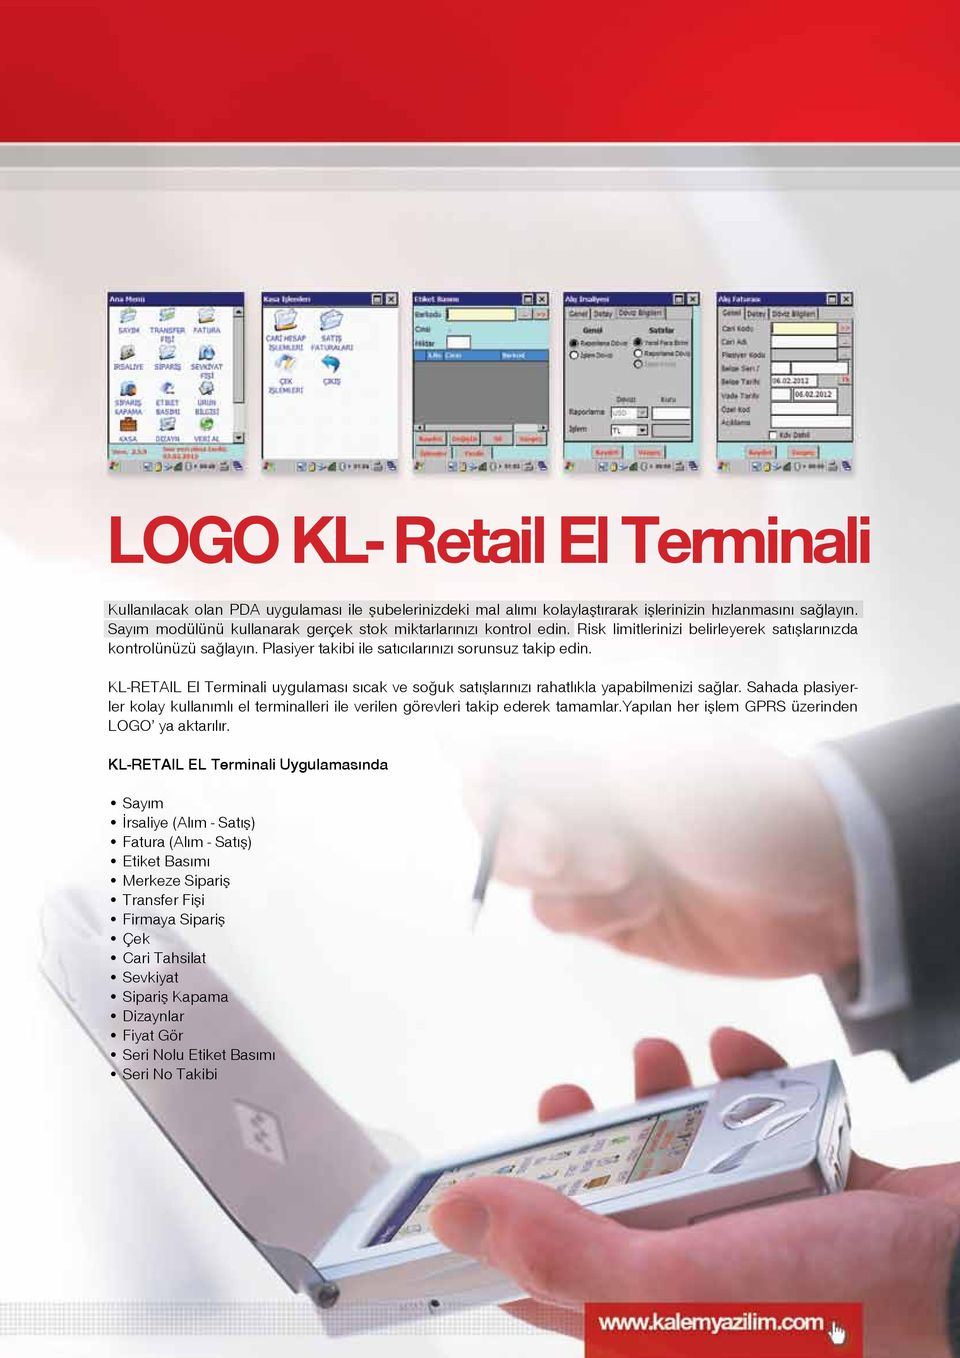 KL-RETAIL El Terminali uygulaması sıcak ve soğuk satışlarınızı rahatlıkla yapabilmenizi sağlar. Sahada plasiyerler kolay kullanımlı el terminalleri ile verilen görevleri takip ederek tamamlar.